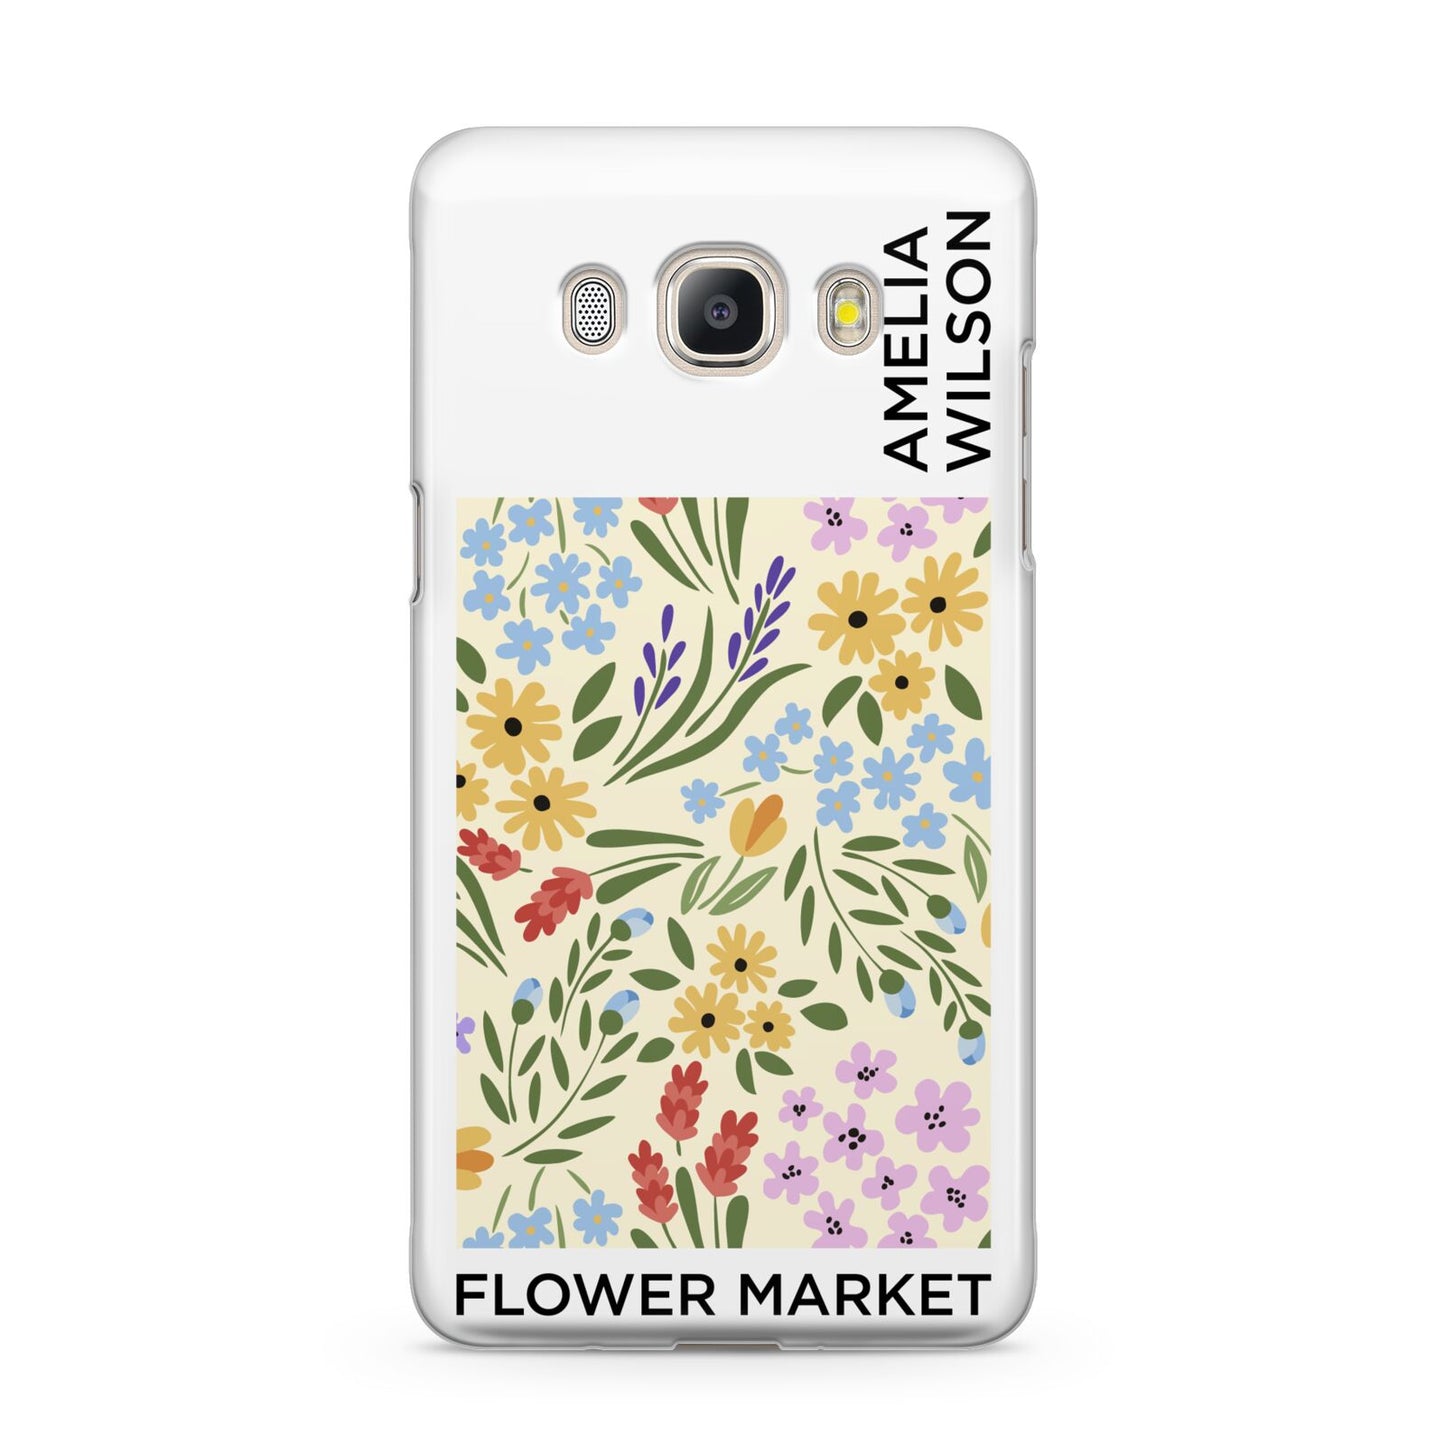 Paris Flower Market Samsung Galaxy J5 2016 Case